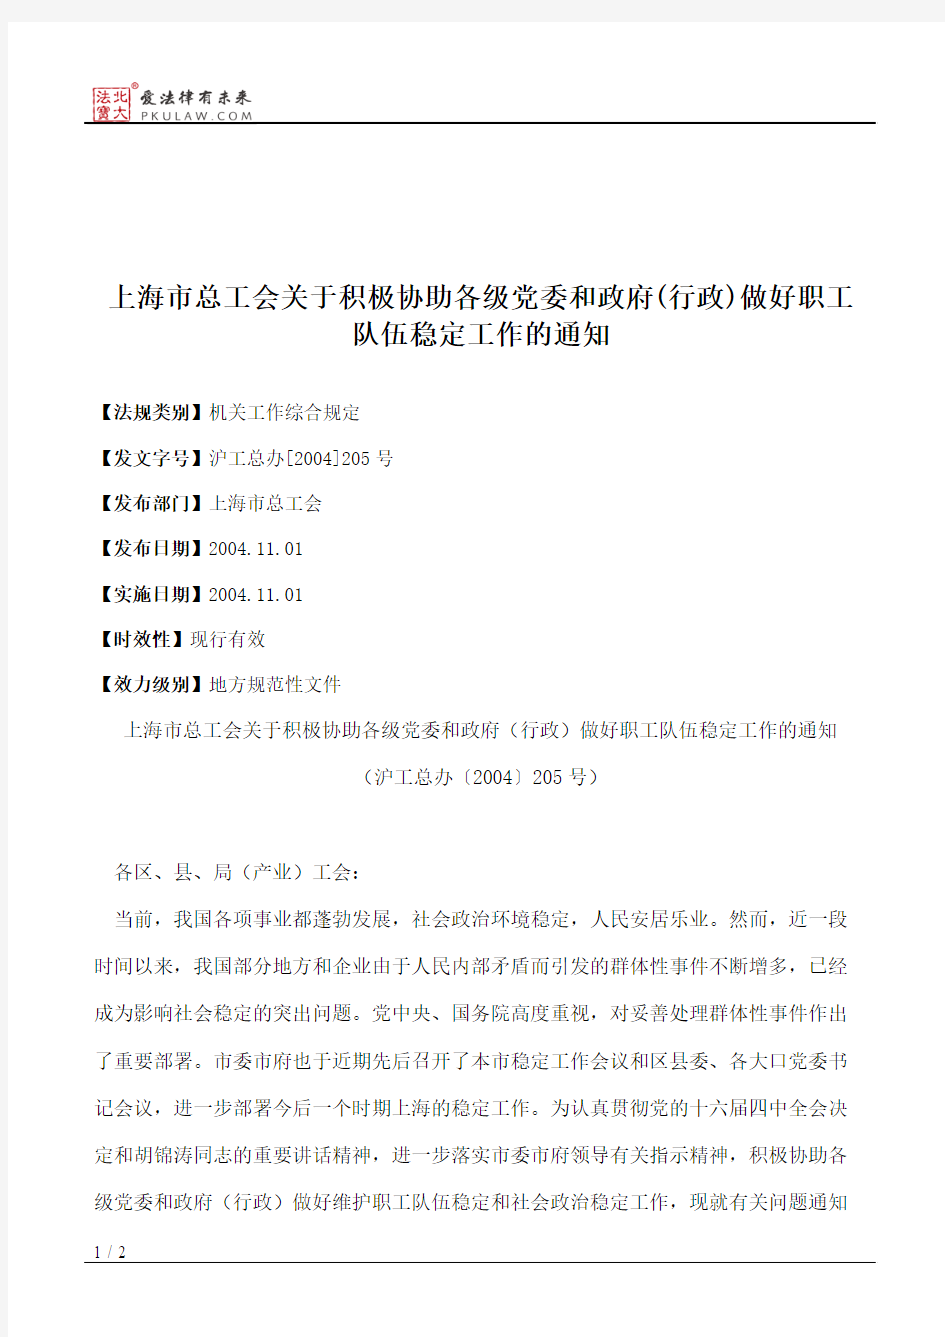 上海市总工会关于积极协助各级党委和政府(行政)做好职工队伍稳定